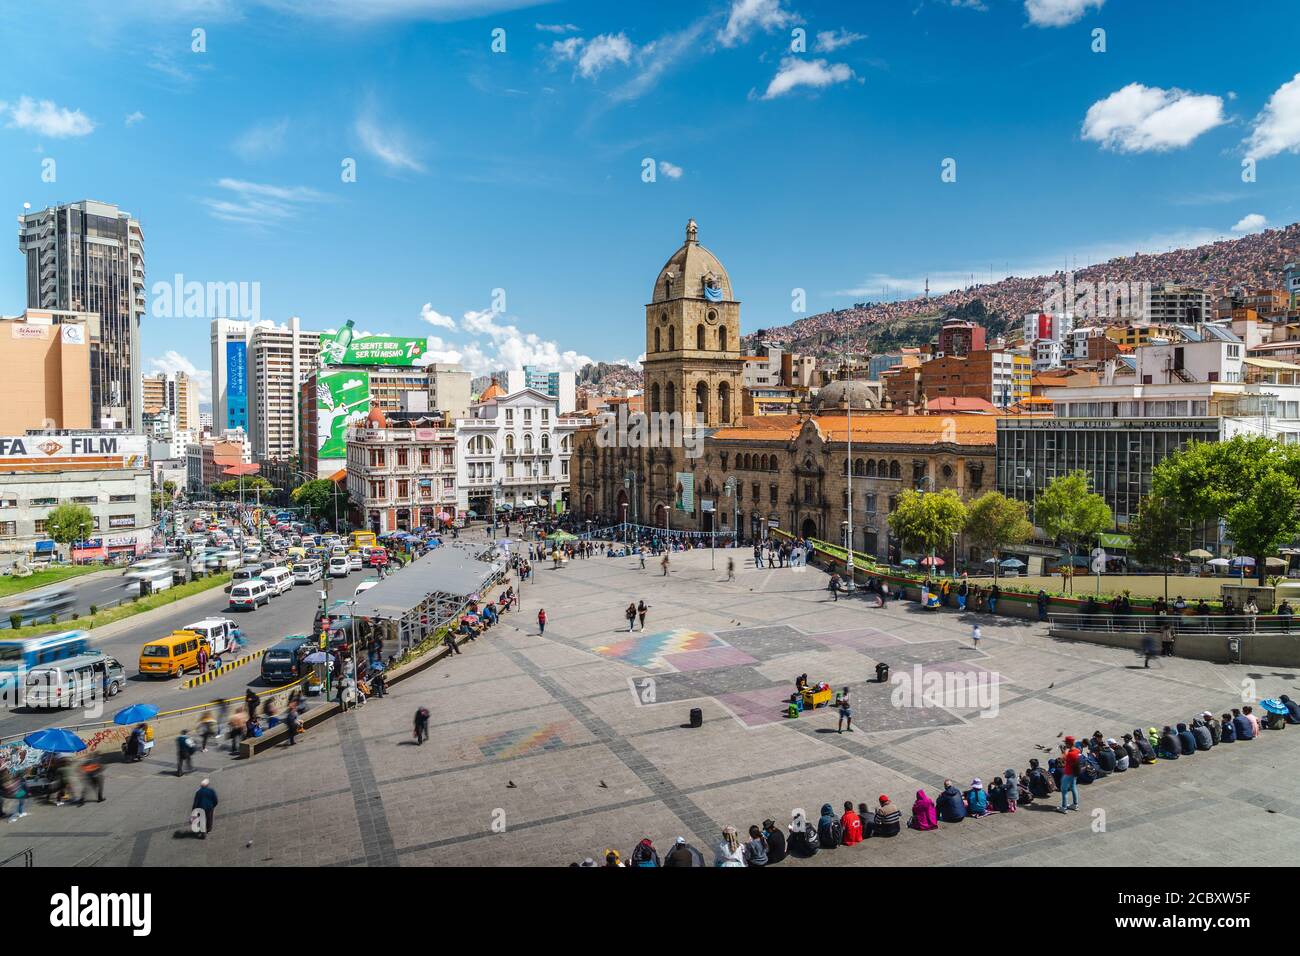 Architektonisches Wahrzeichen San Francisco Kathedrale an der Plaza San Francisco bei Tag in Central La Paz, Bolivien, Südamerika. Stockfoto